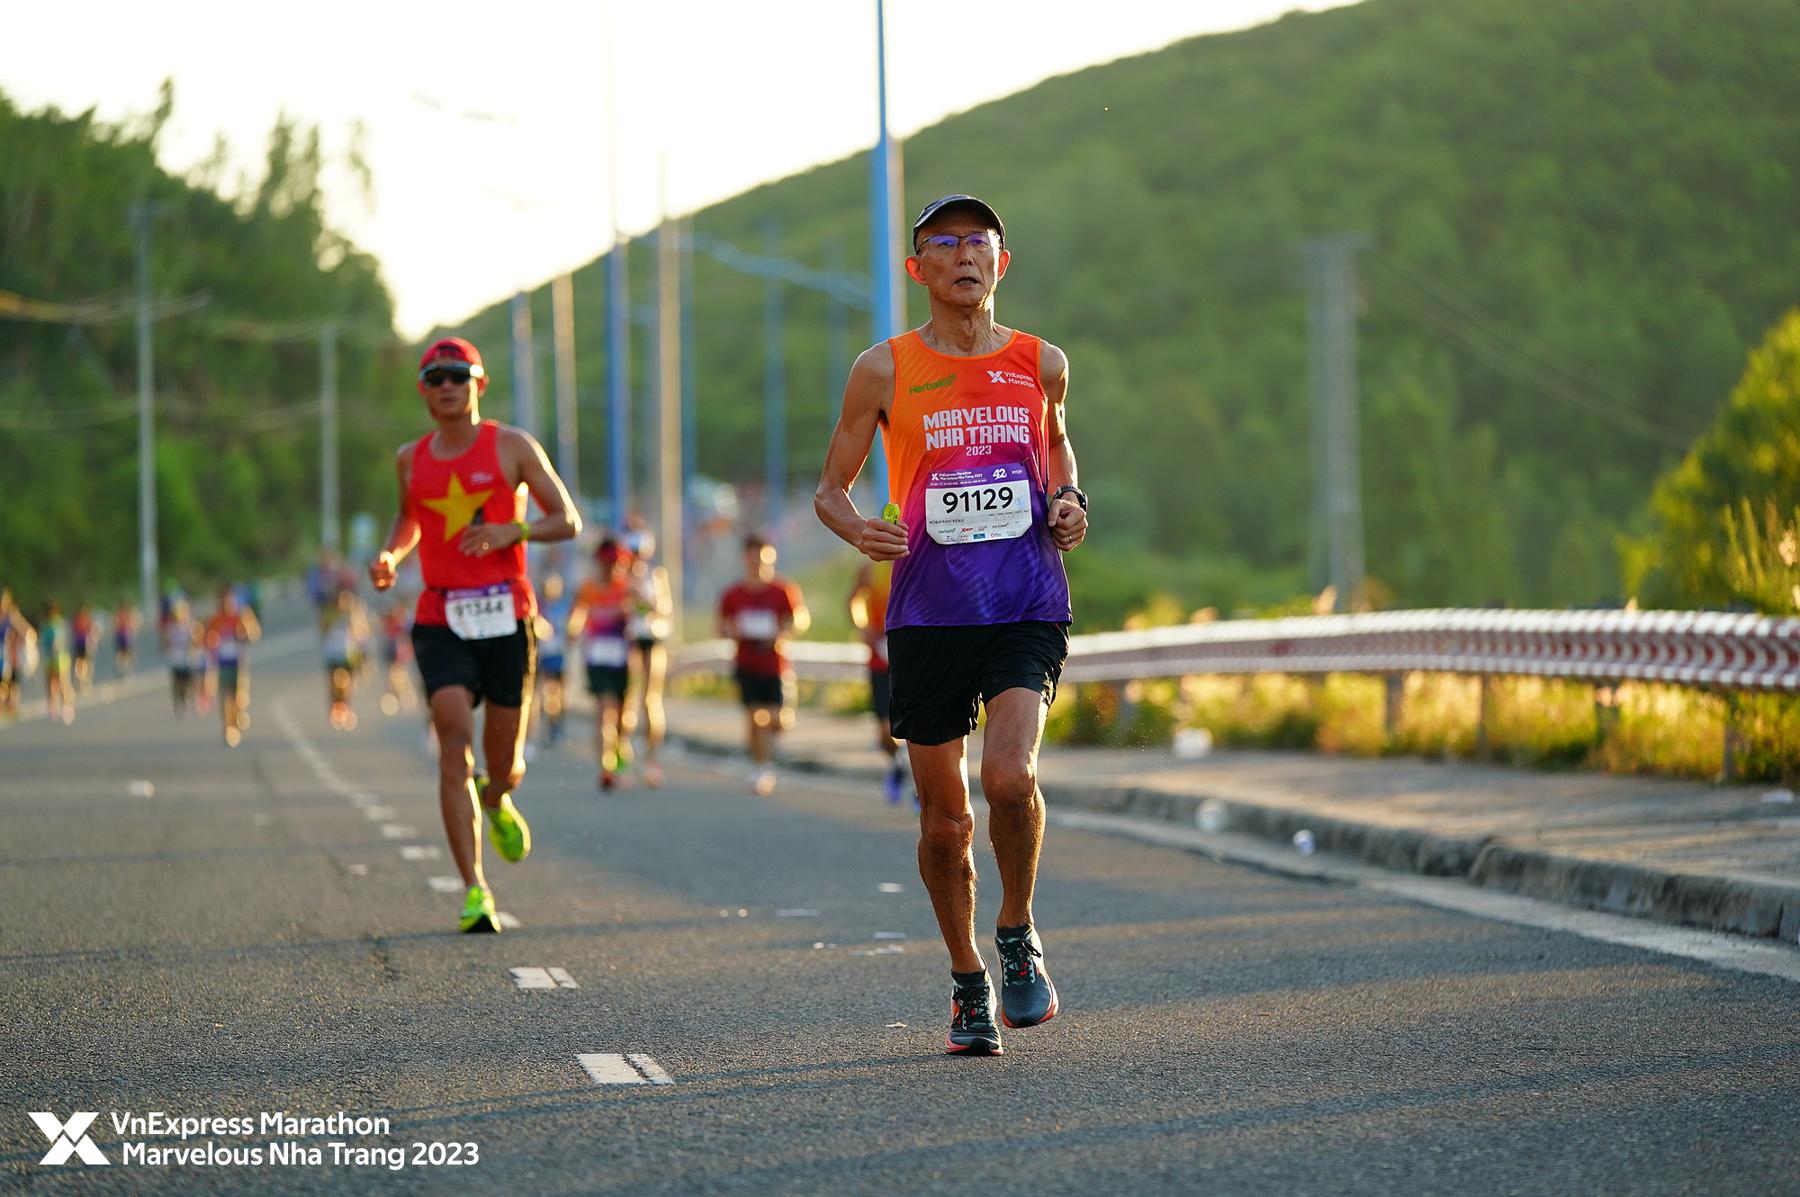 Runner Nhật 59 tuổi năm lần chinh phục 42km tại VnExpress Marathon